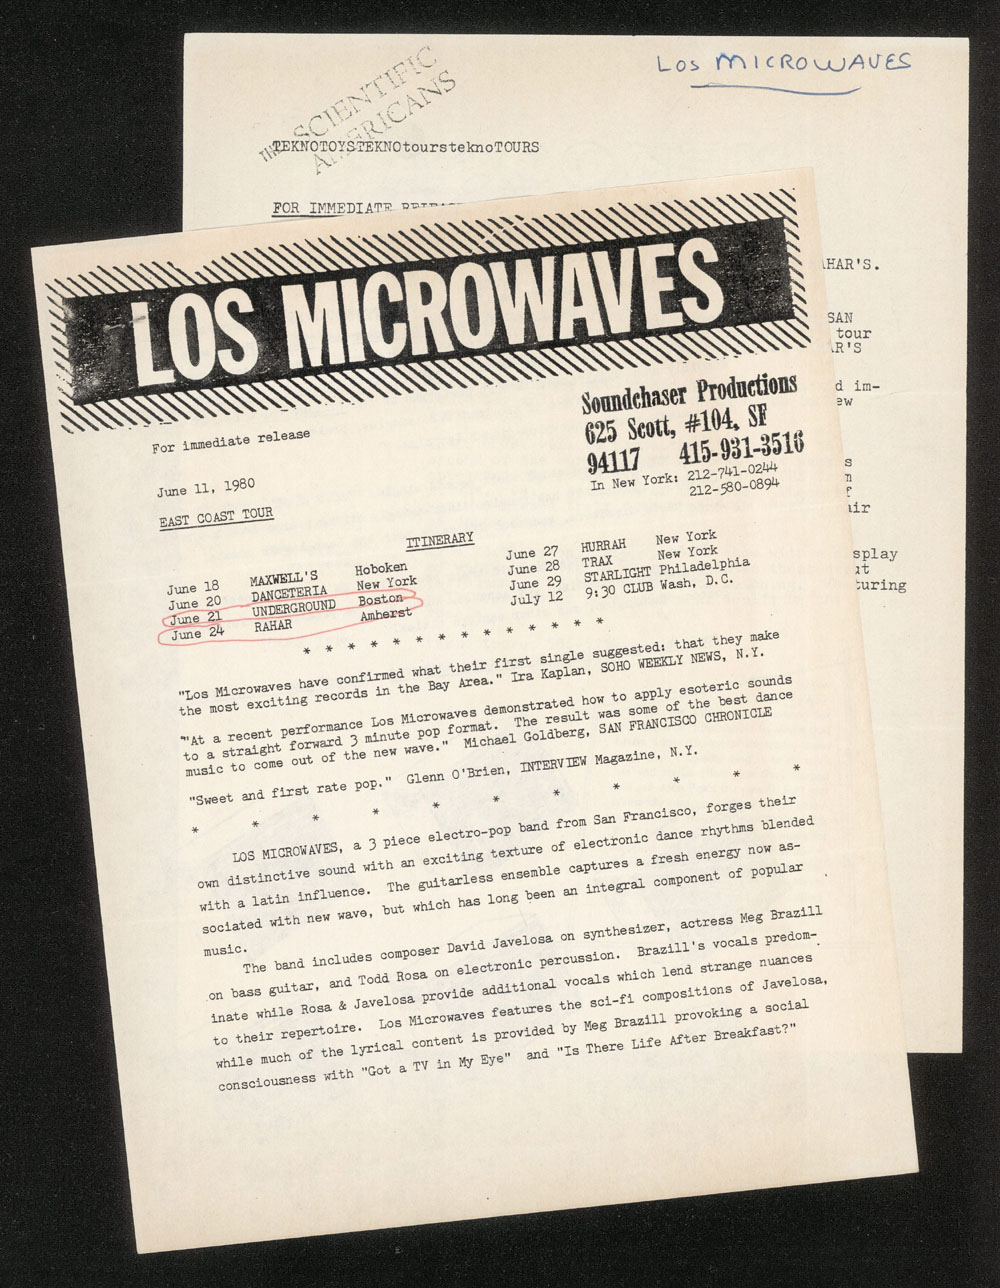 LOS MICROWAVES press release